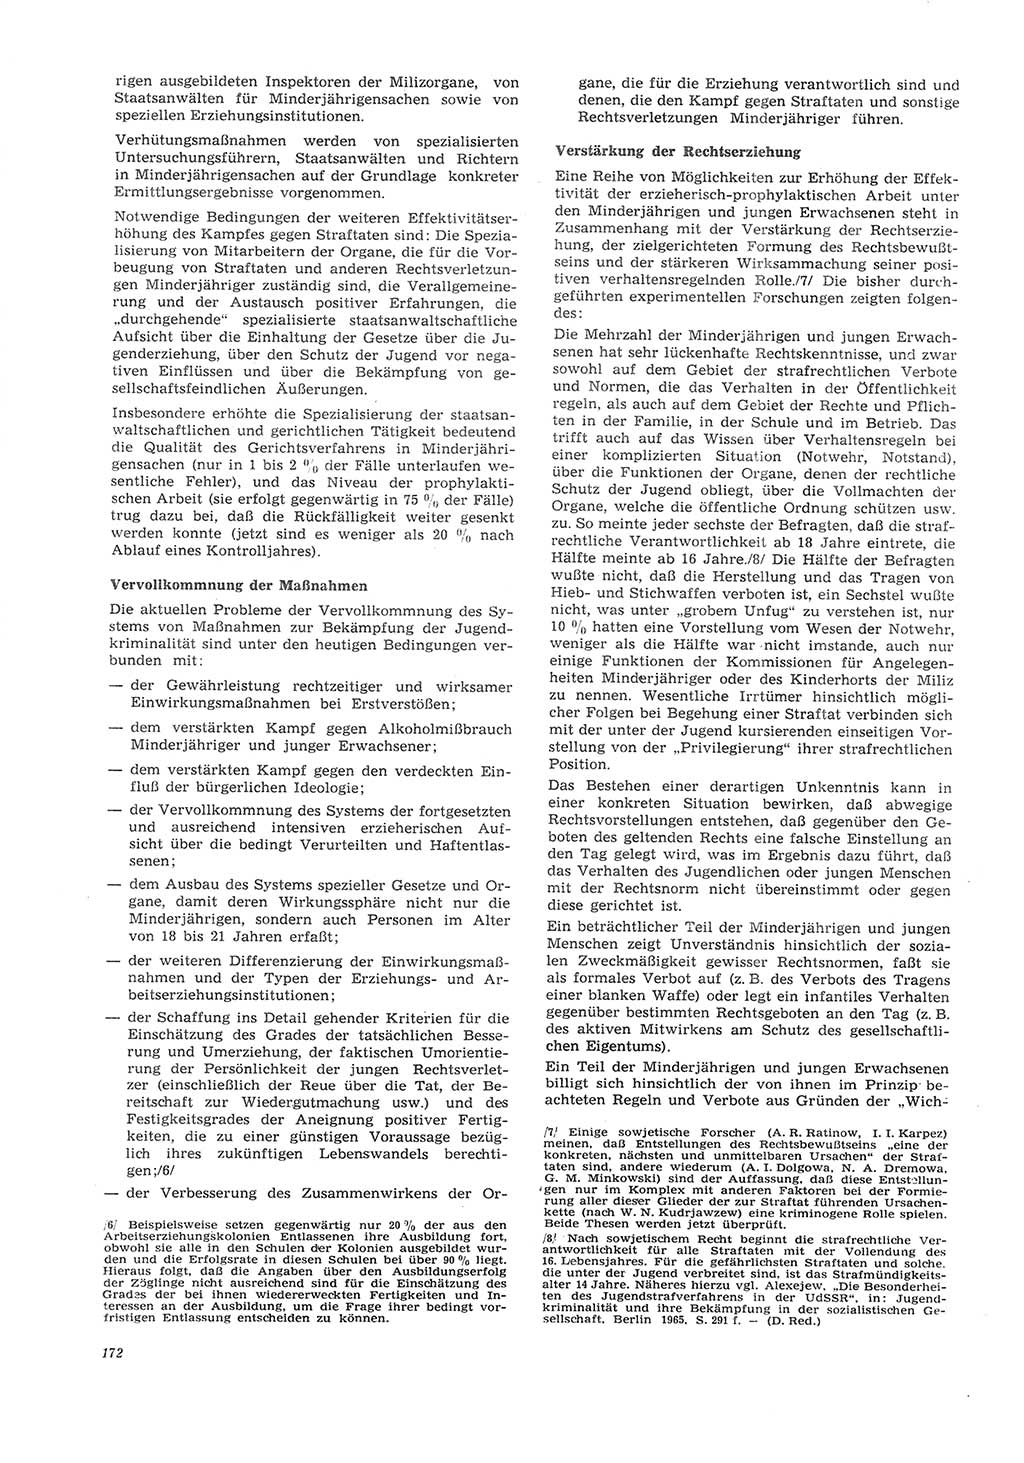 Neue Justiz (NJ), Zeitschrift für Recht und Rechtswissenschaft [Deutsche Demokratische Republik (DDR)], 26. Jahrgang 1972, Seite 172 (NJ DDR 1972, S. 172)